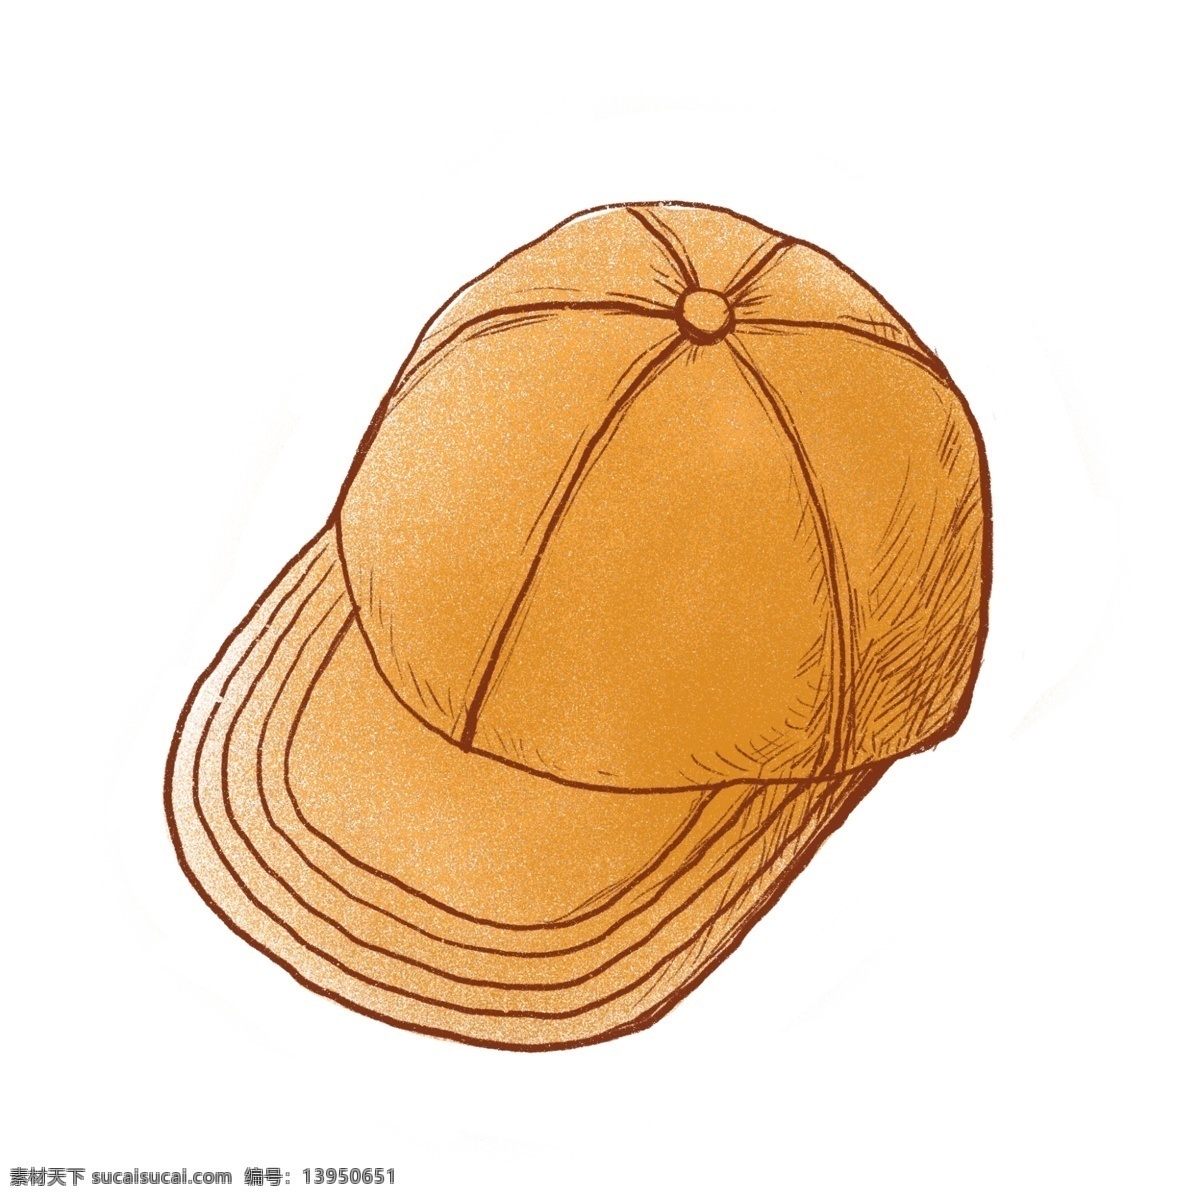 卡通 鸭舌帽 免 抠 帽子 卡通帽子 黄色帽子 棒球帽 遮阳帽 年轻 活力 运动 卡通鸭舌帽